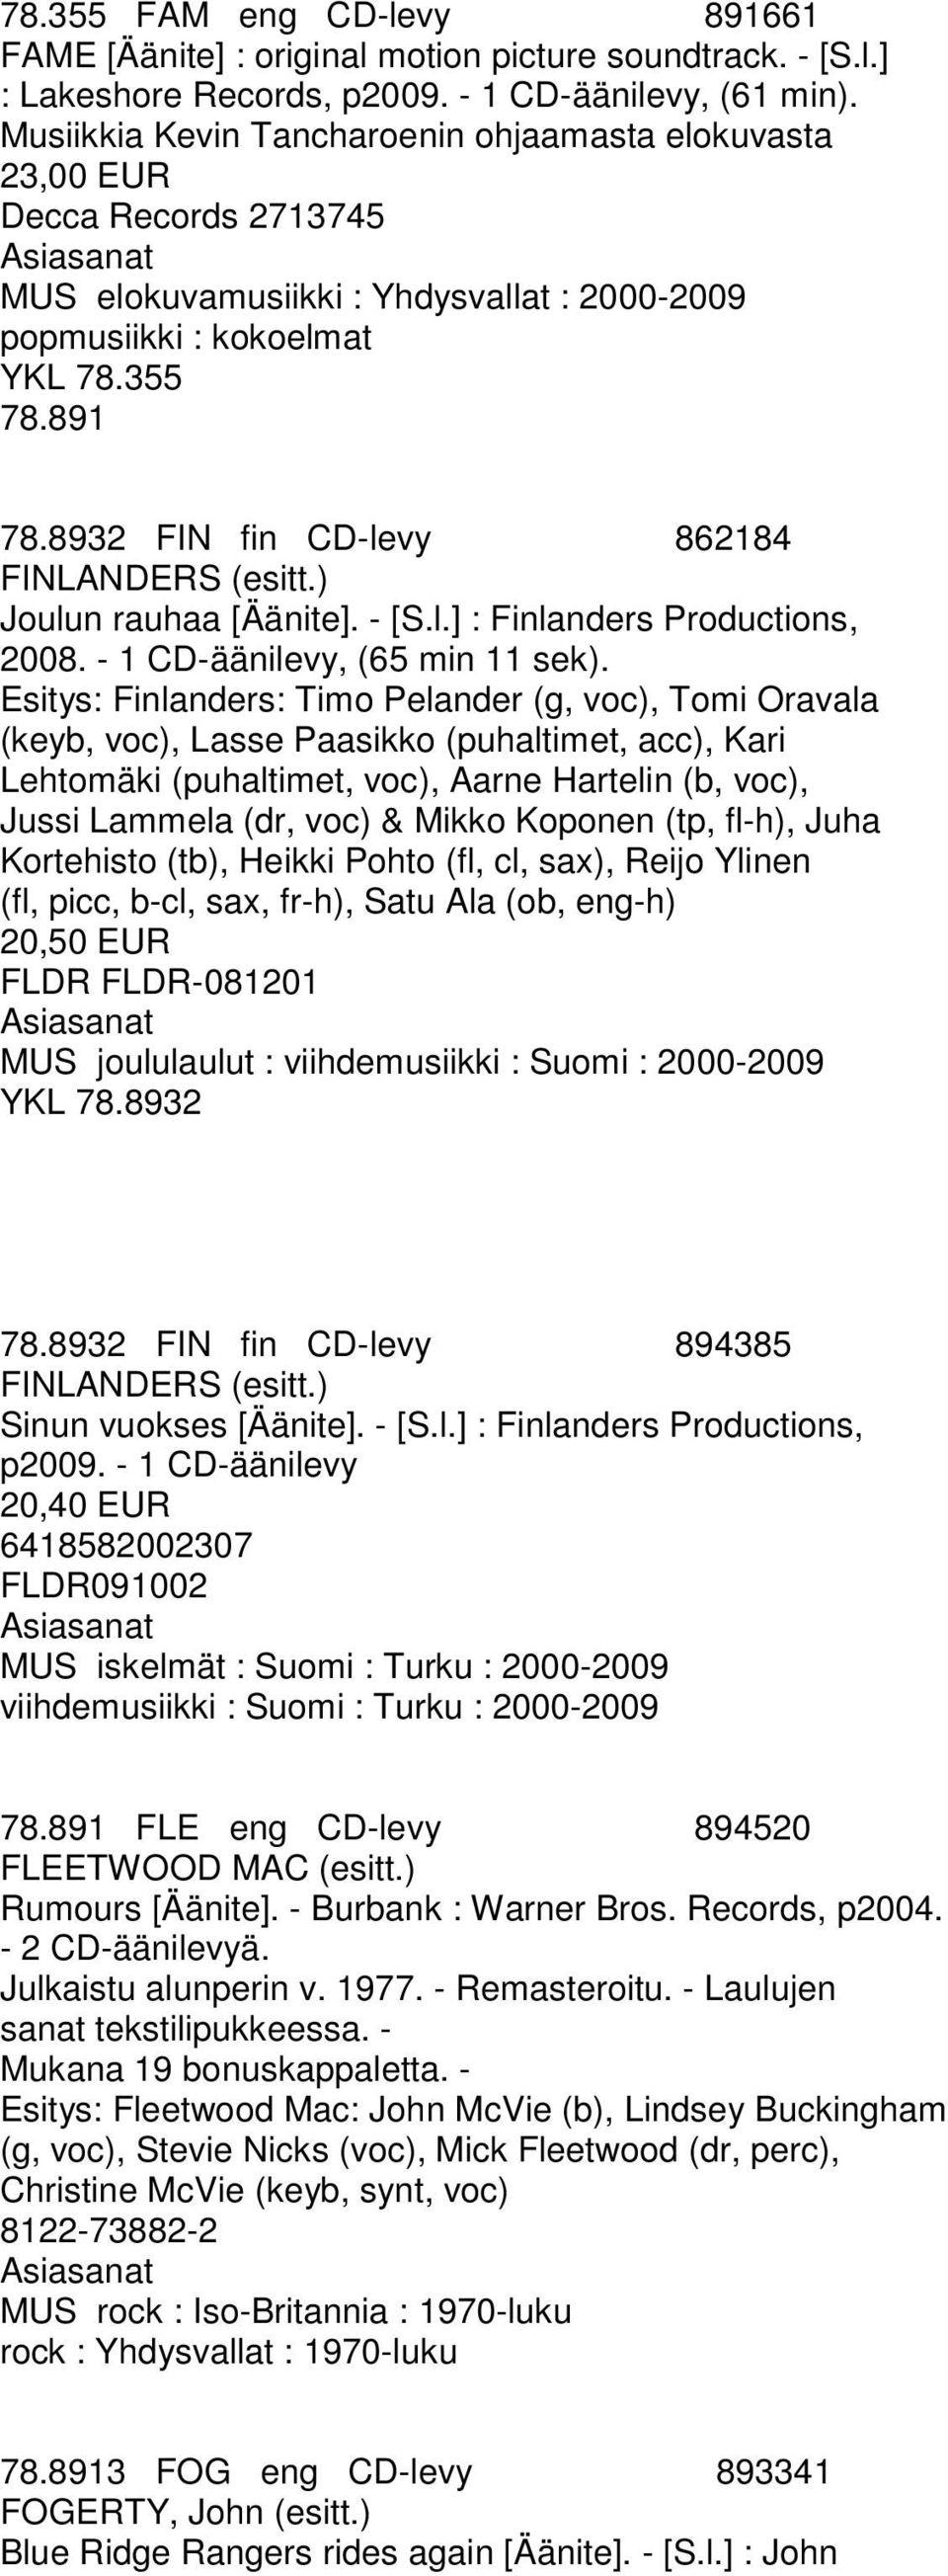 8932 FIN fin CD-levy 862184 FINLANDERS (esitt.) Joulun rauhaa [Äänite]. - [S.l.] : Finlanders Productions, 2008. - 1 CD-äänilevy, (65 min 11 sek).